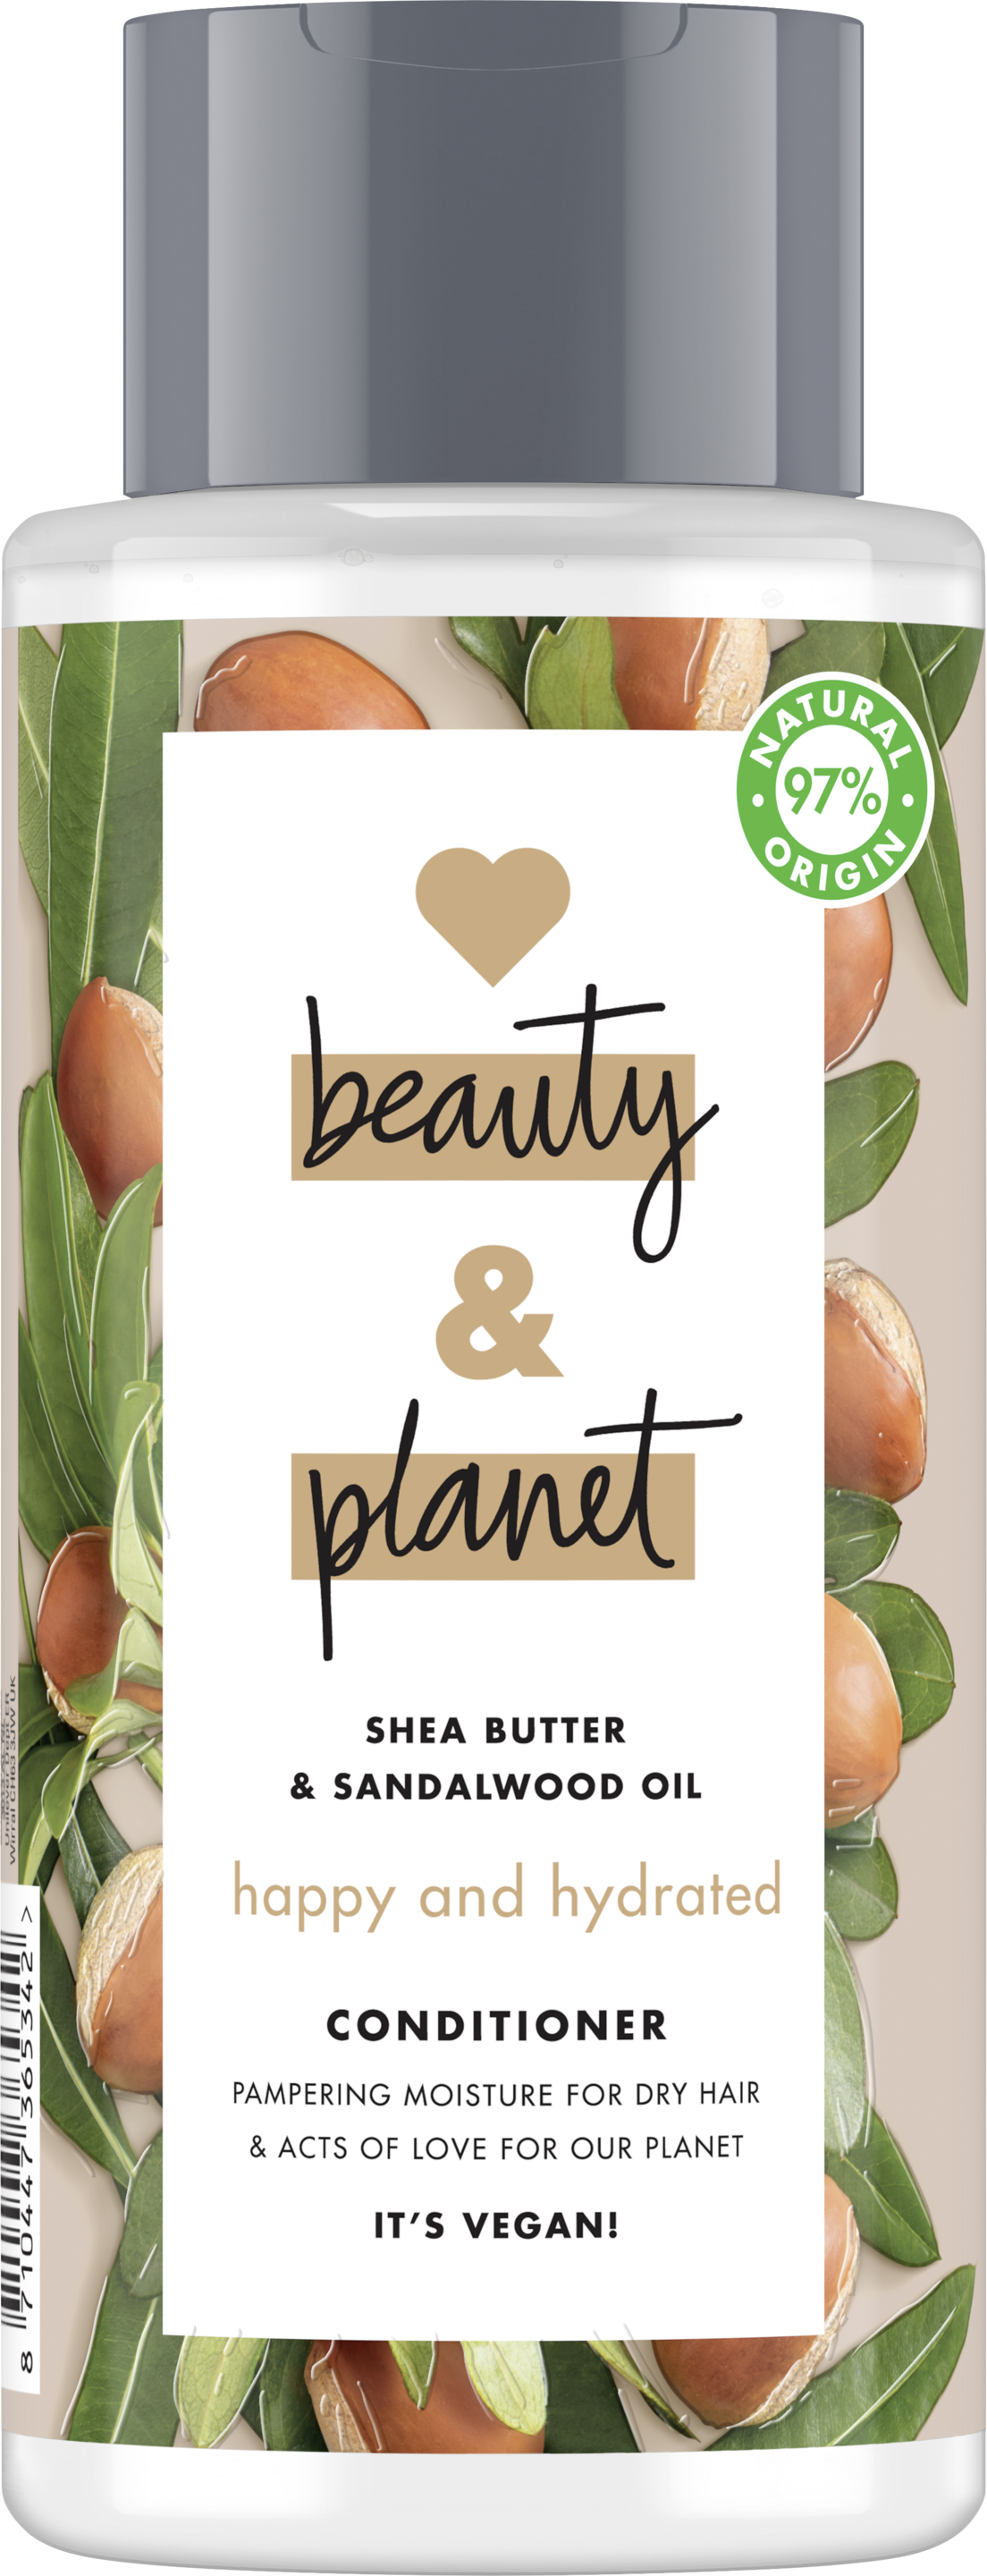 Voorkant conditionerverpakking Love Beauty Planet sheaboter & sandelhout conditioner gelukkig & gehydrateerd 400 ml